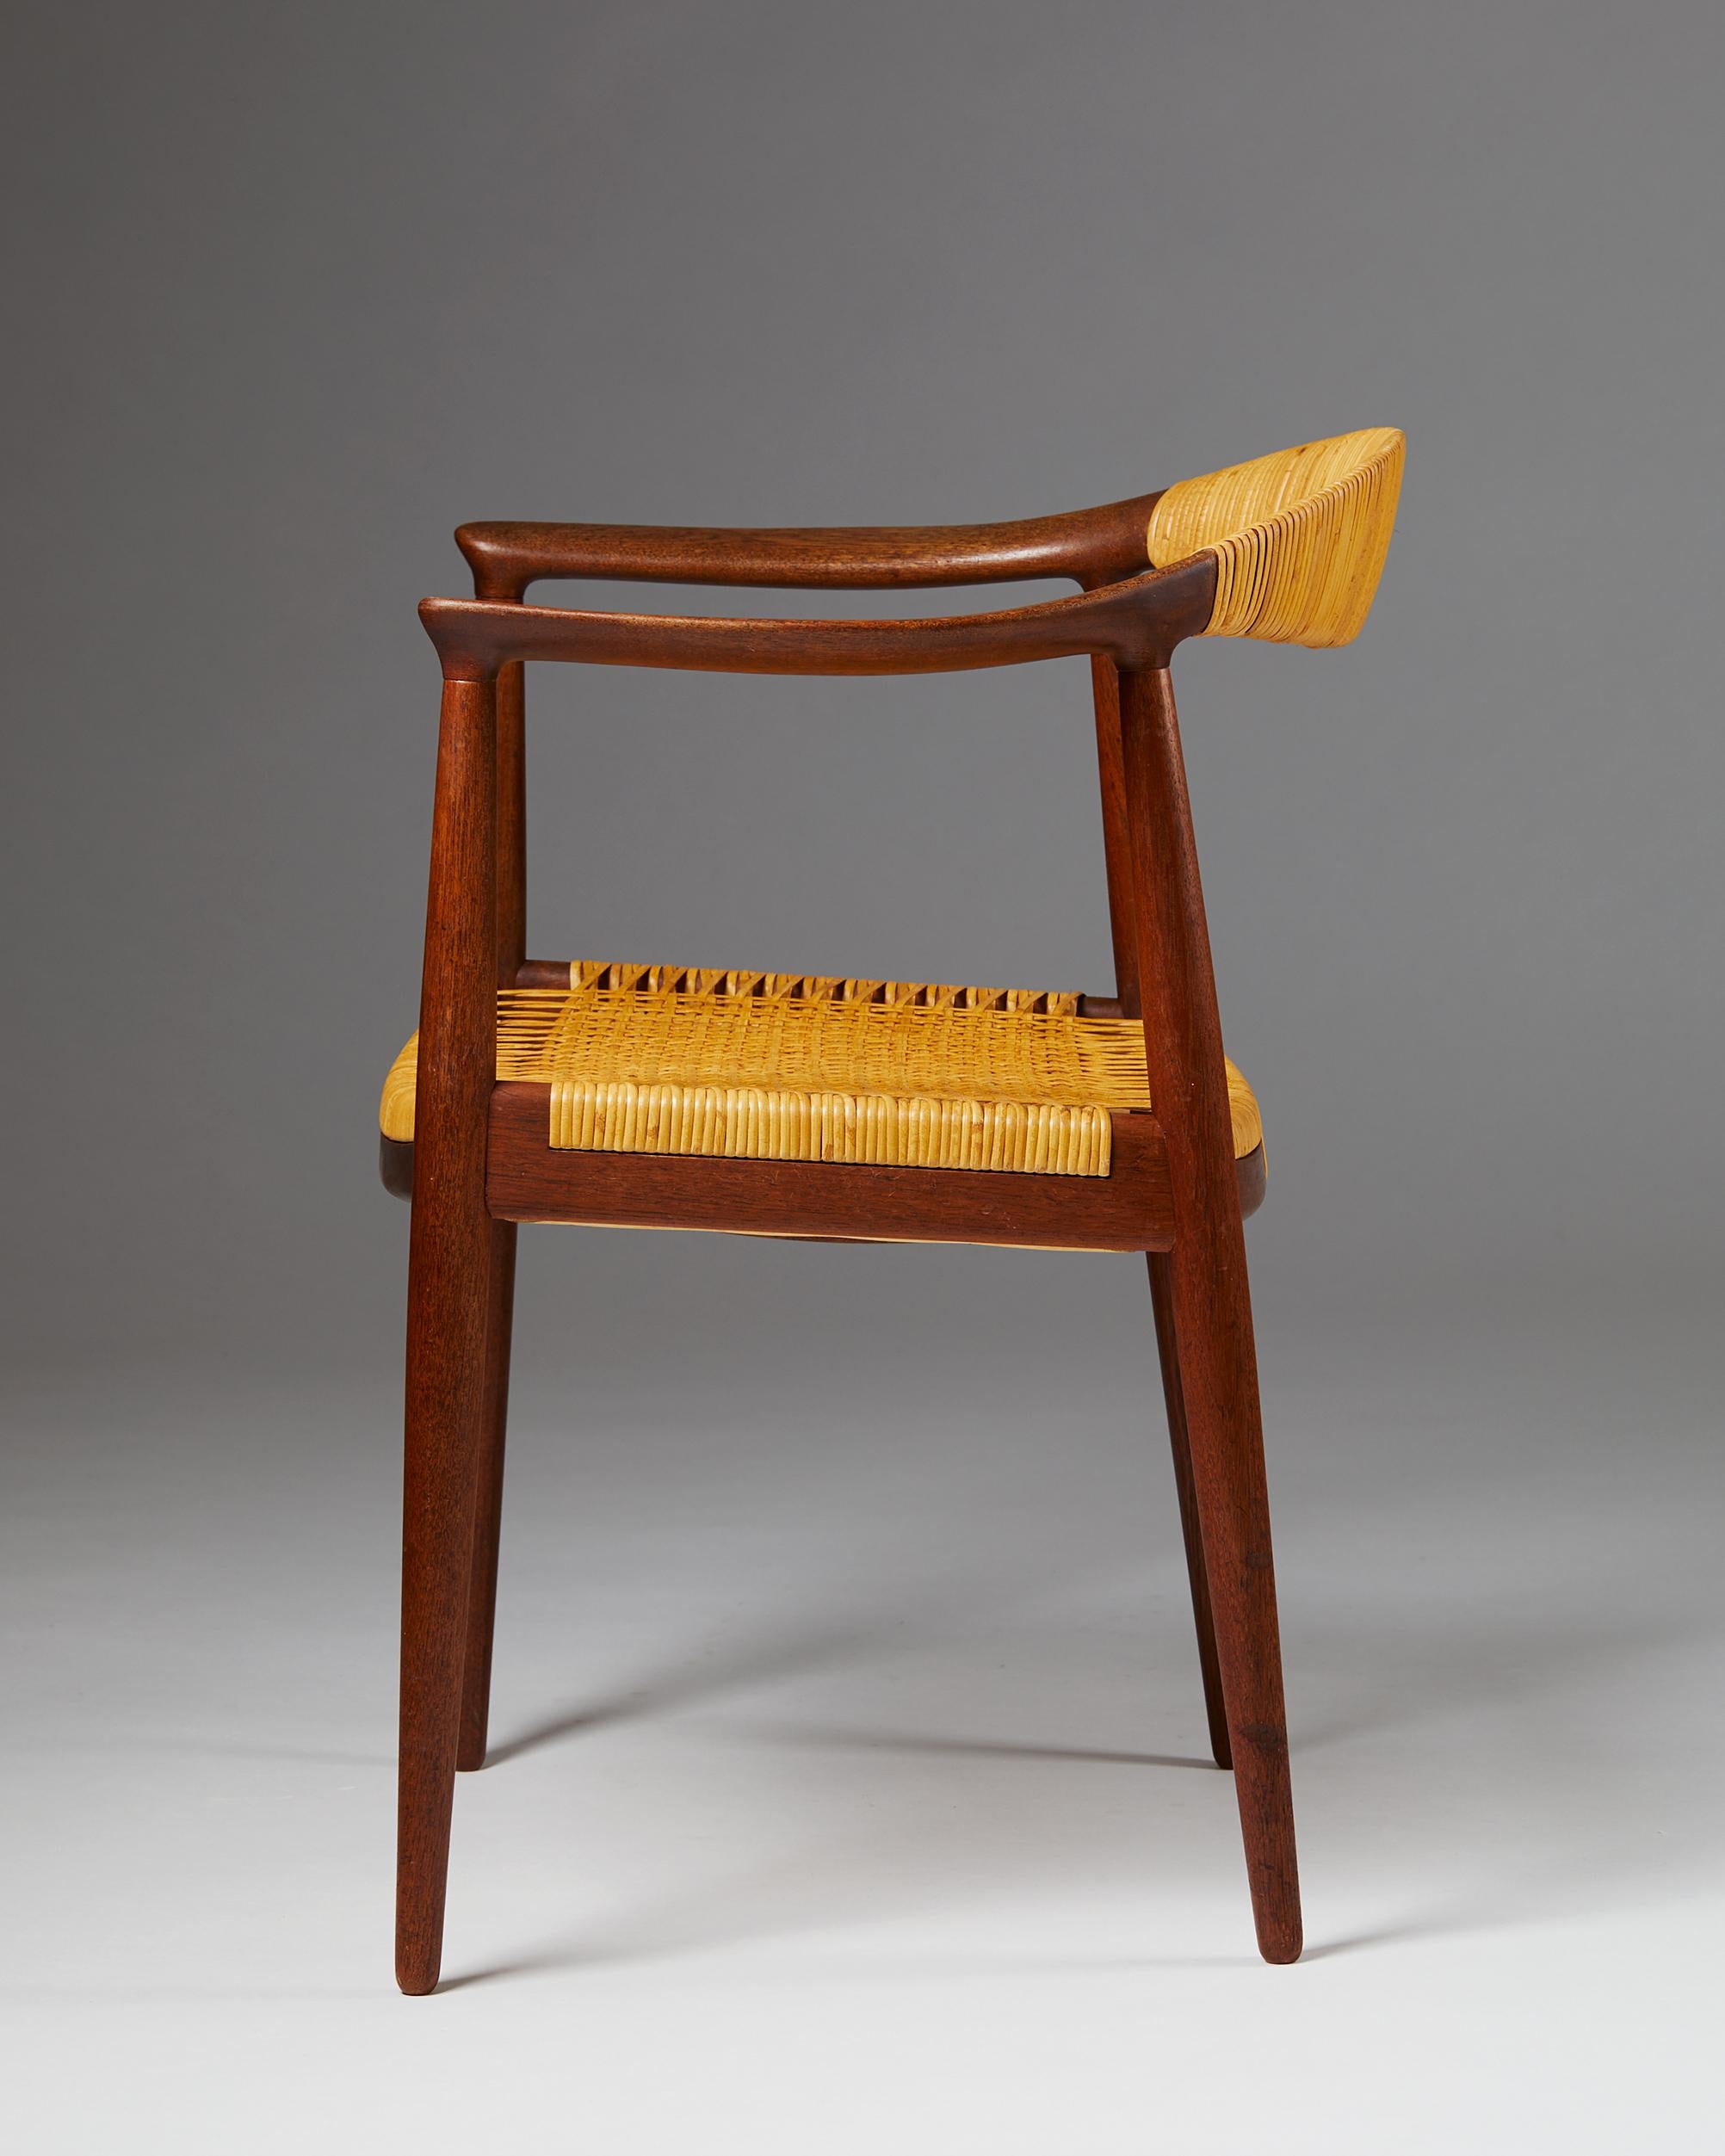 Danish Armchair “The Chair”, Designed by Hans Wegner for Johannes Hansen, Denmark, 1949